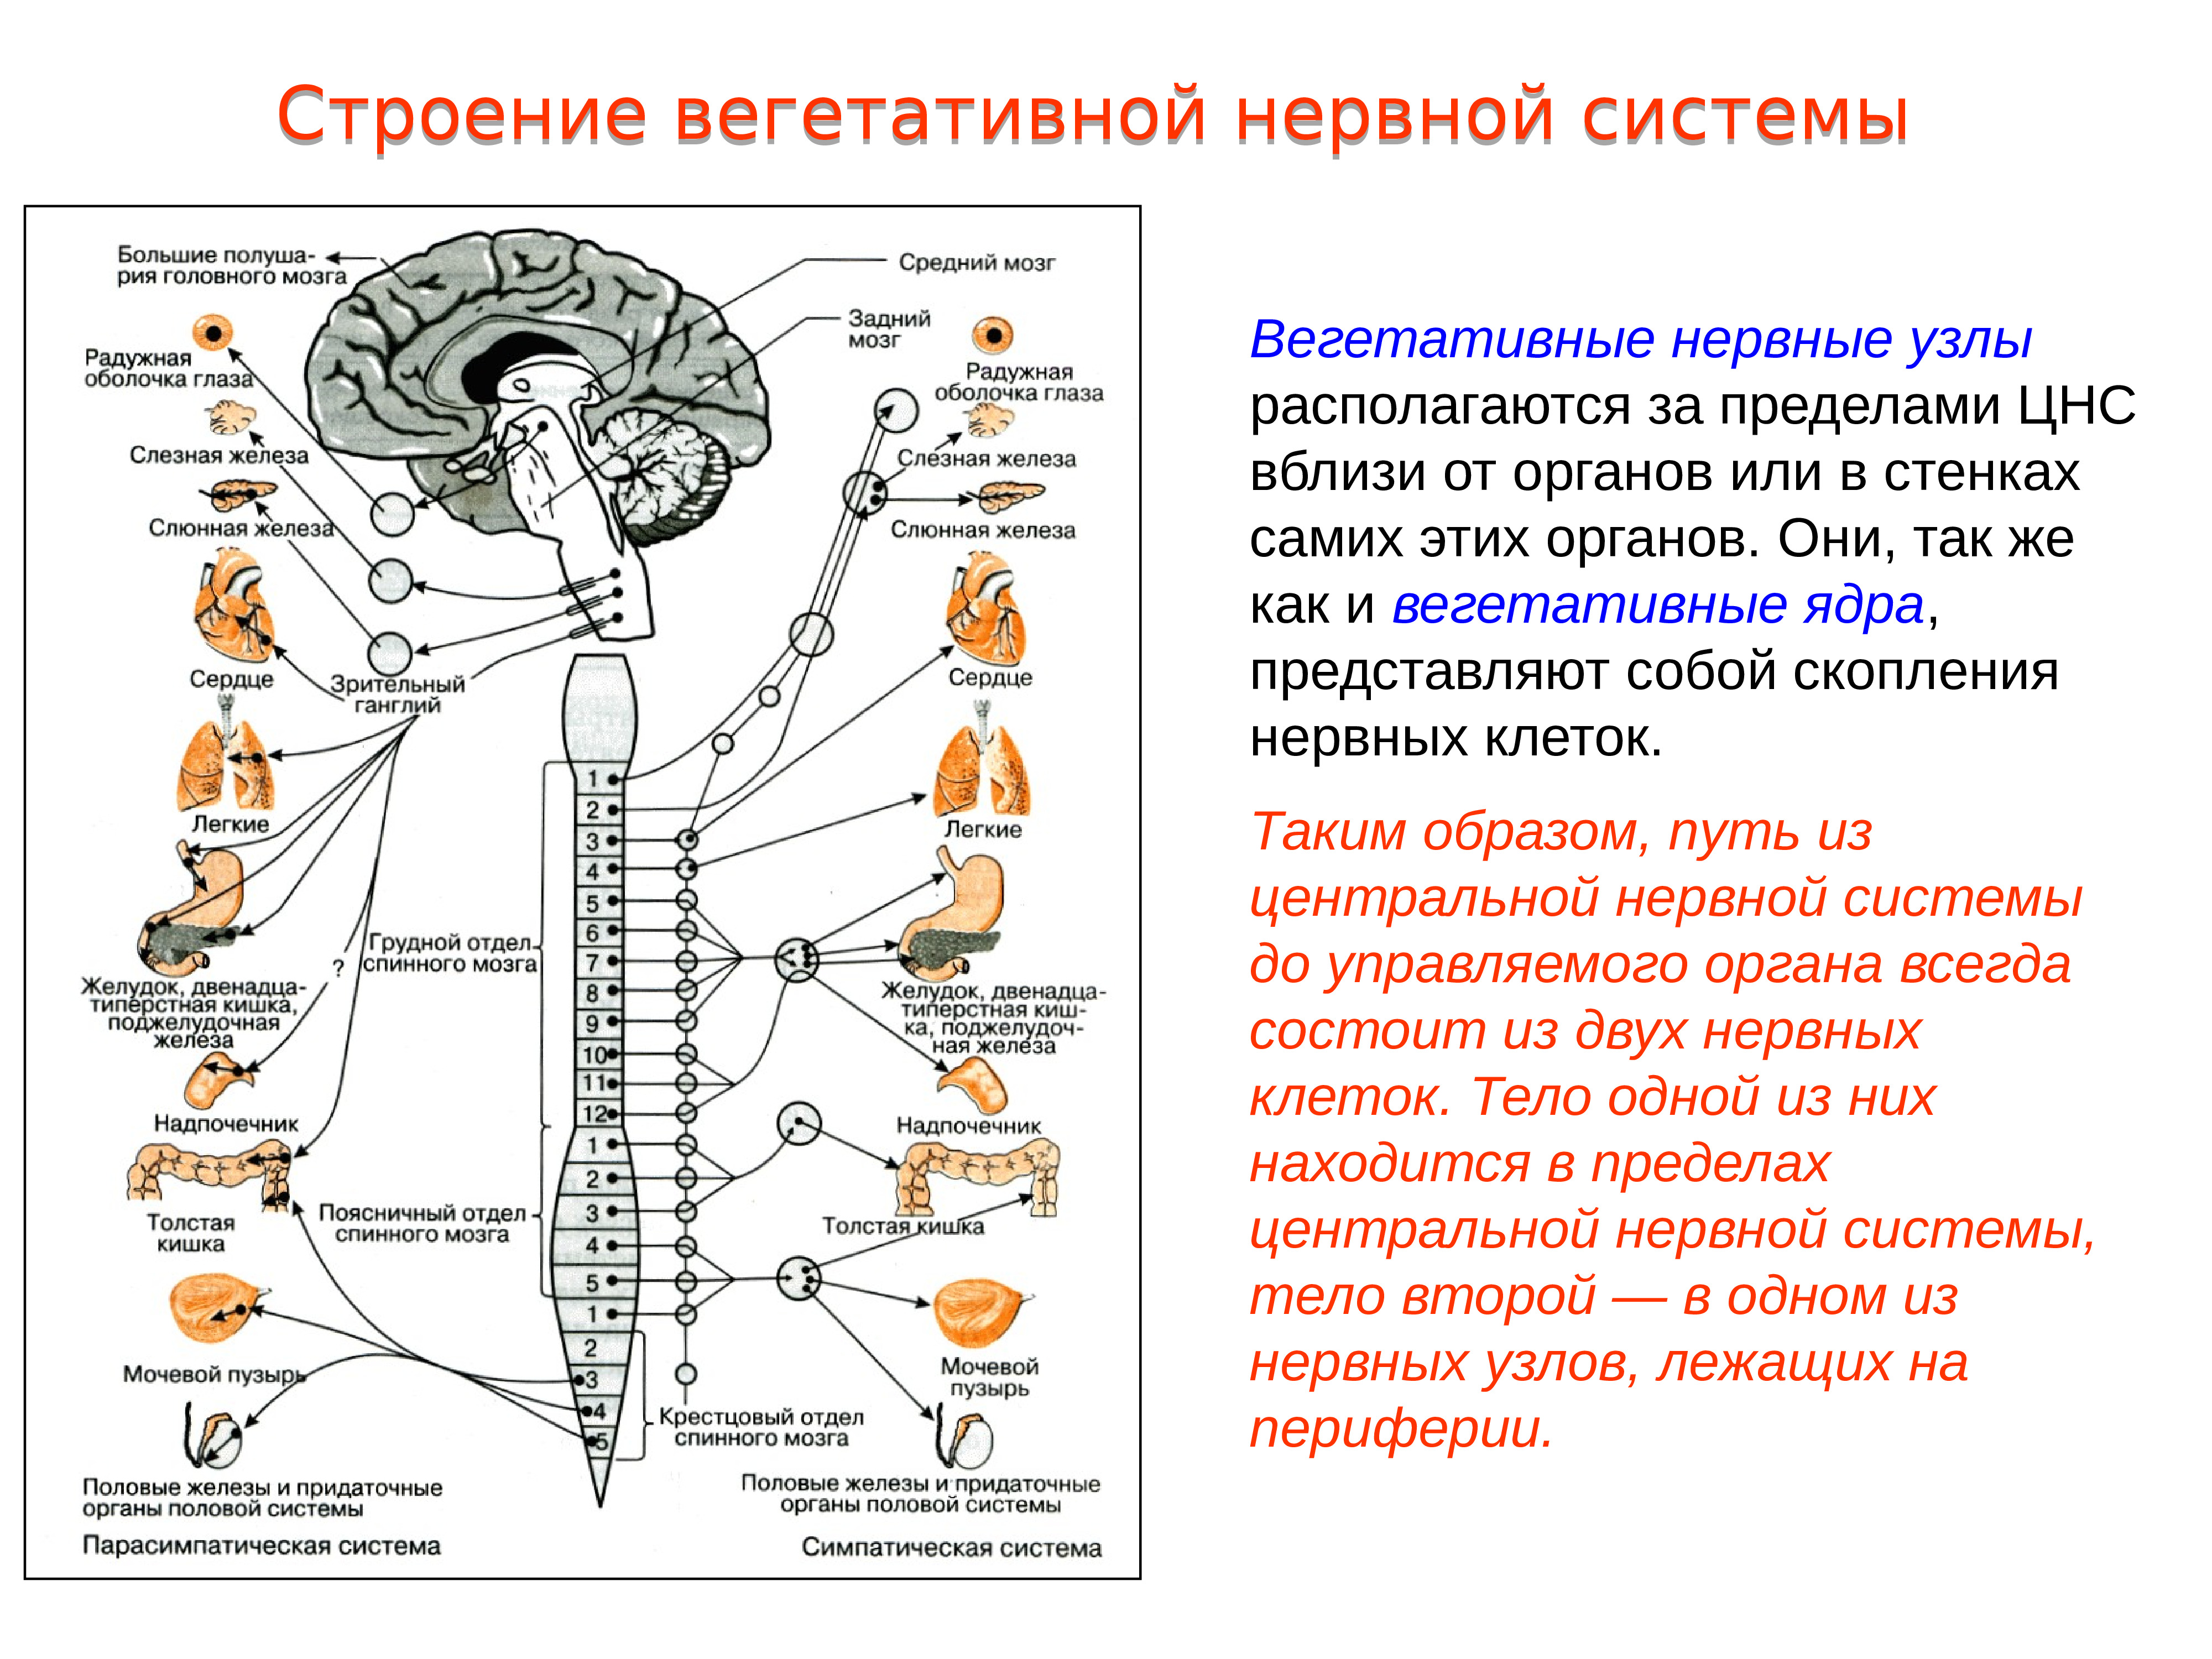 Центральный отдел нервной системы спинной мозг